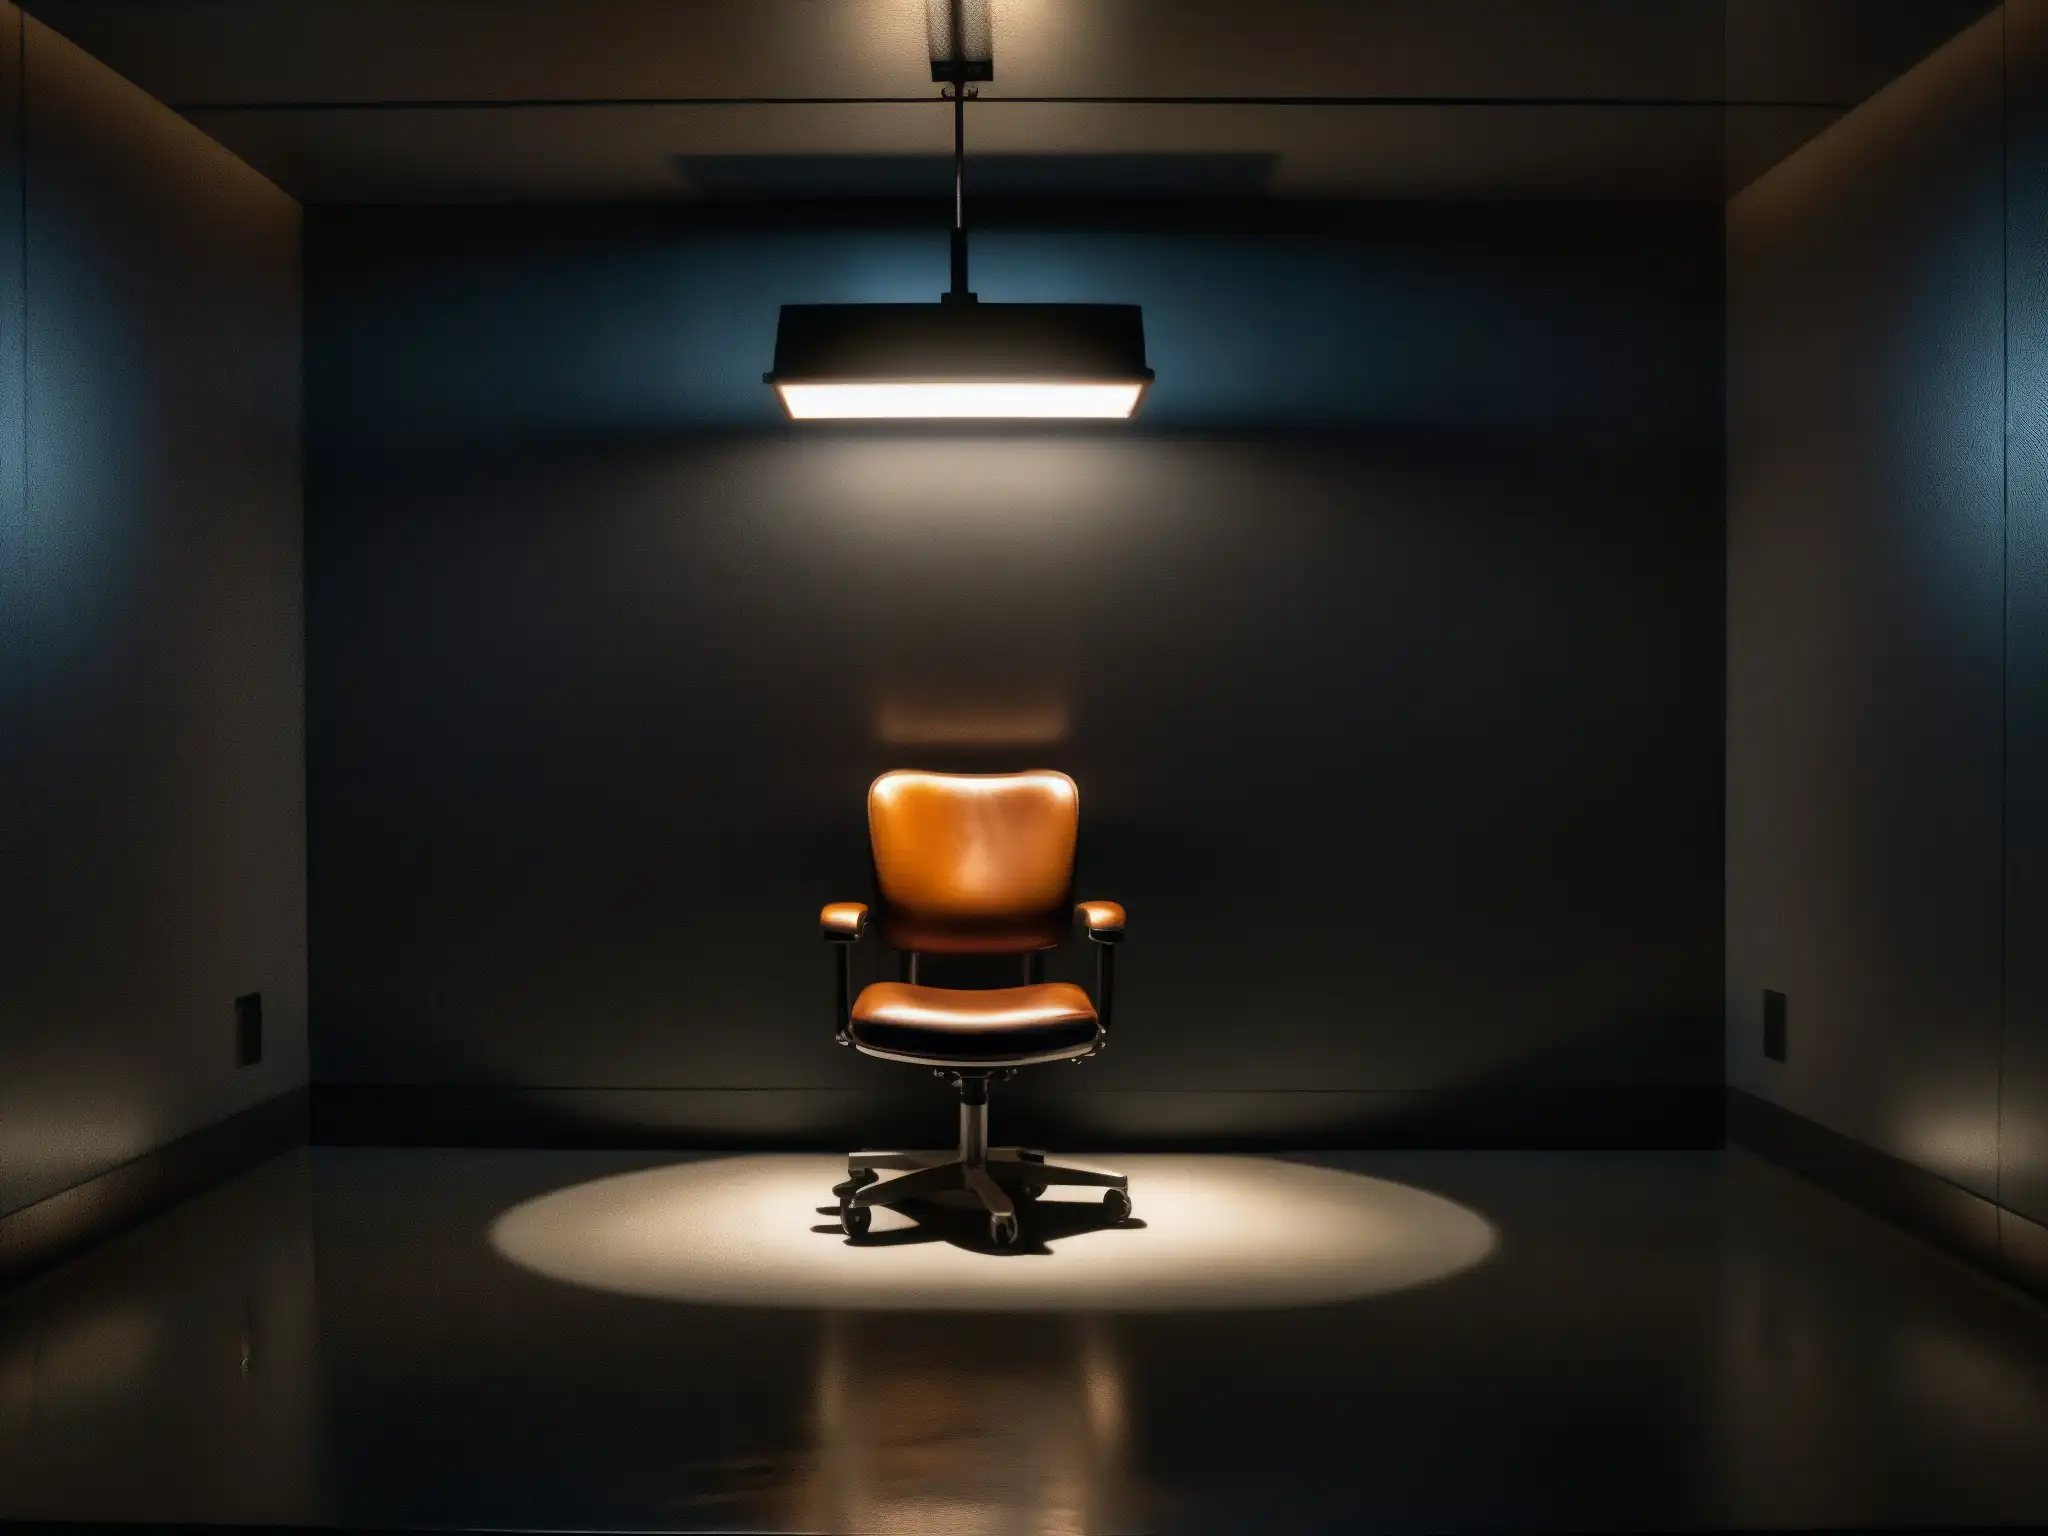 Un sombrío cuarto de interrogatorio con una sola luz brillante sobre una silla en el centro